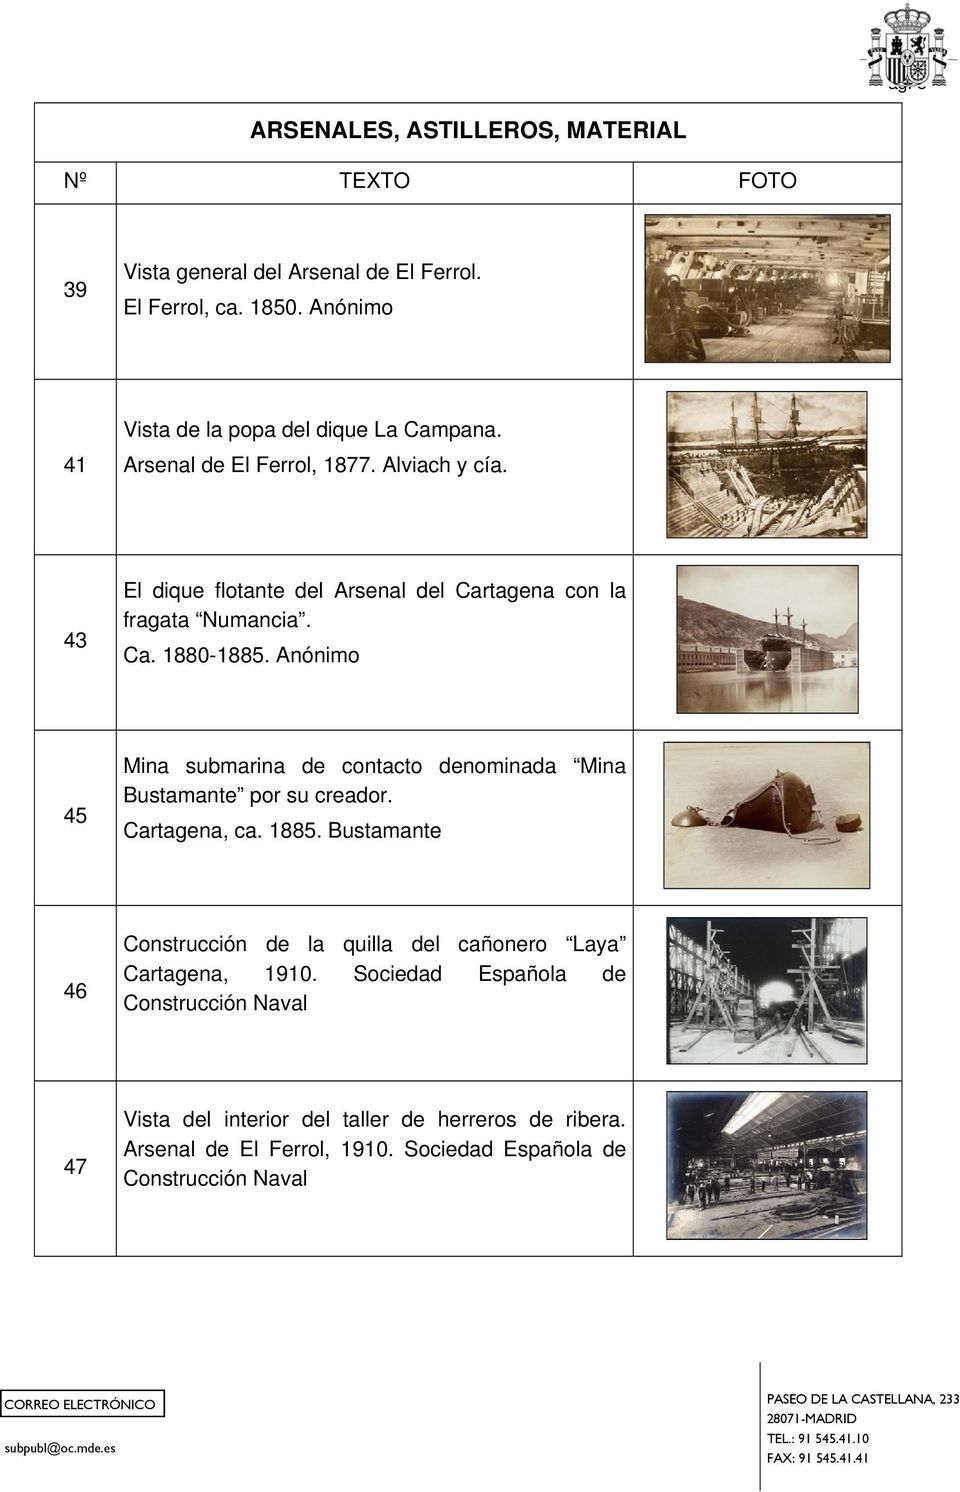 Anónimo 45 Mina submarina de contacto denominada Mina Bustamante por su creador. Cartagena, ca. 1885.